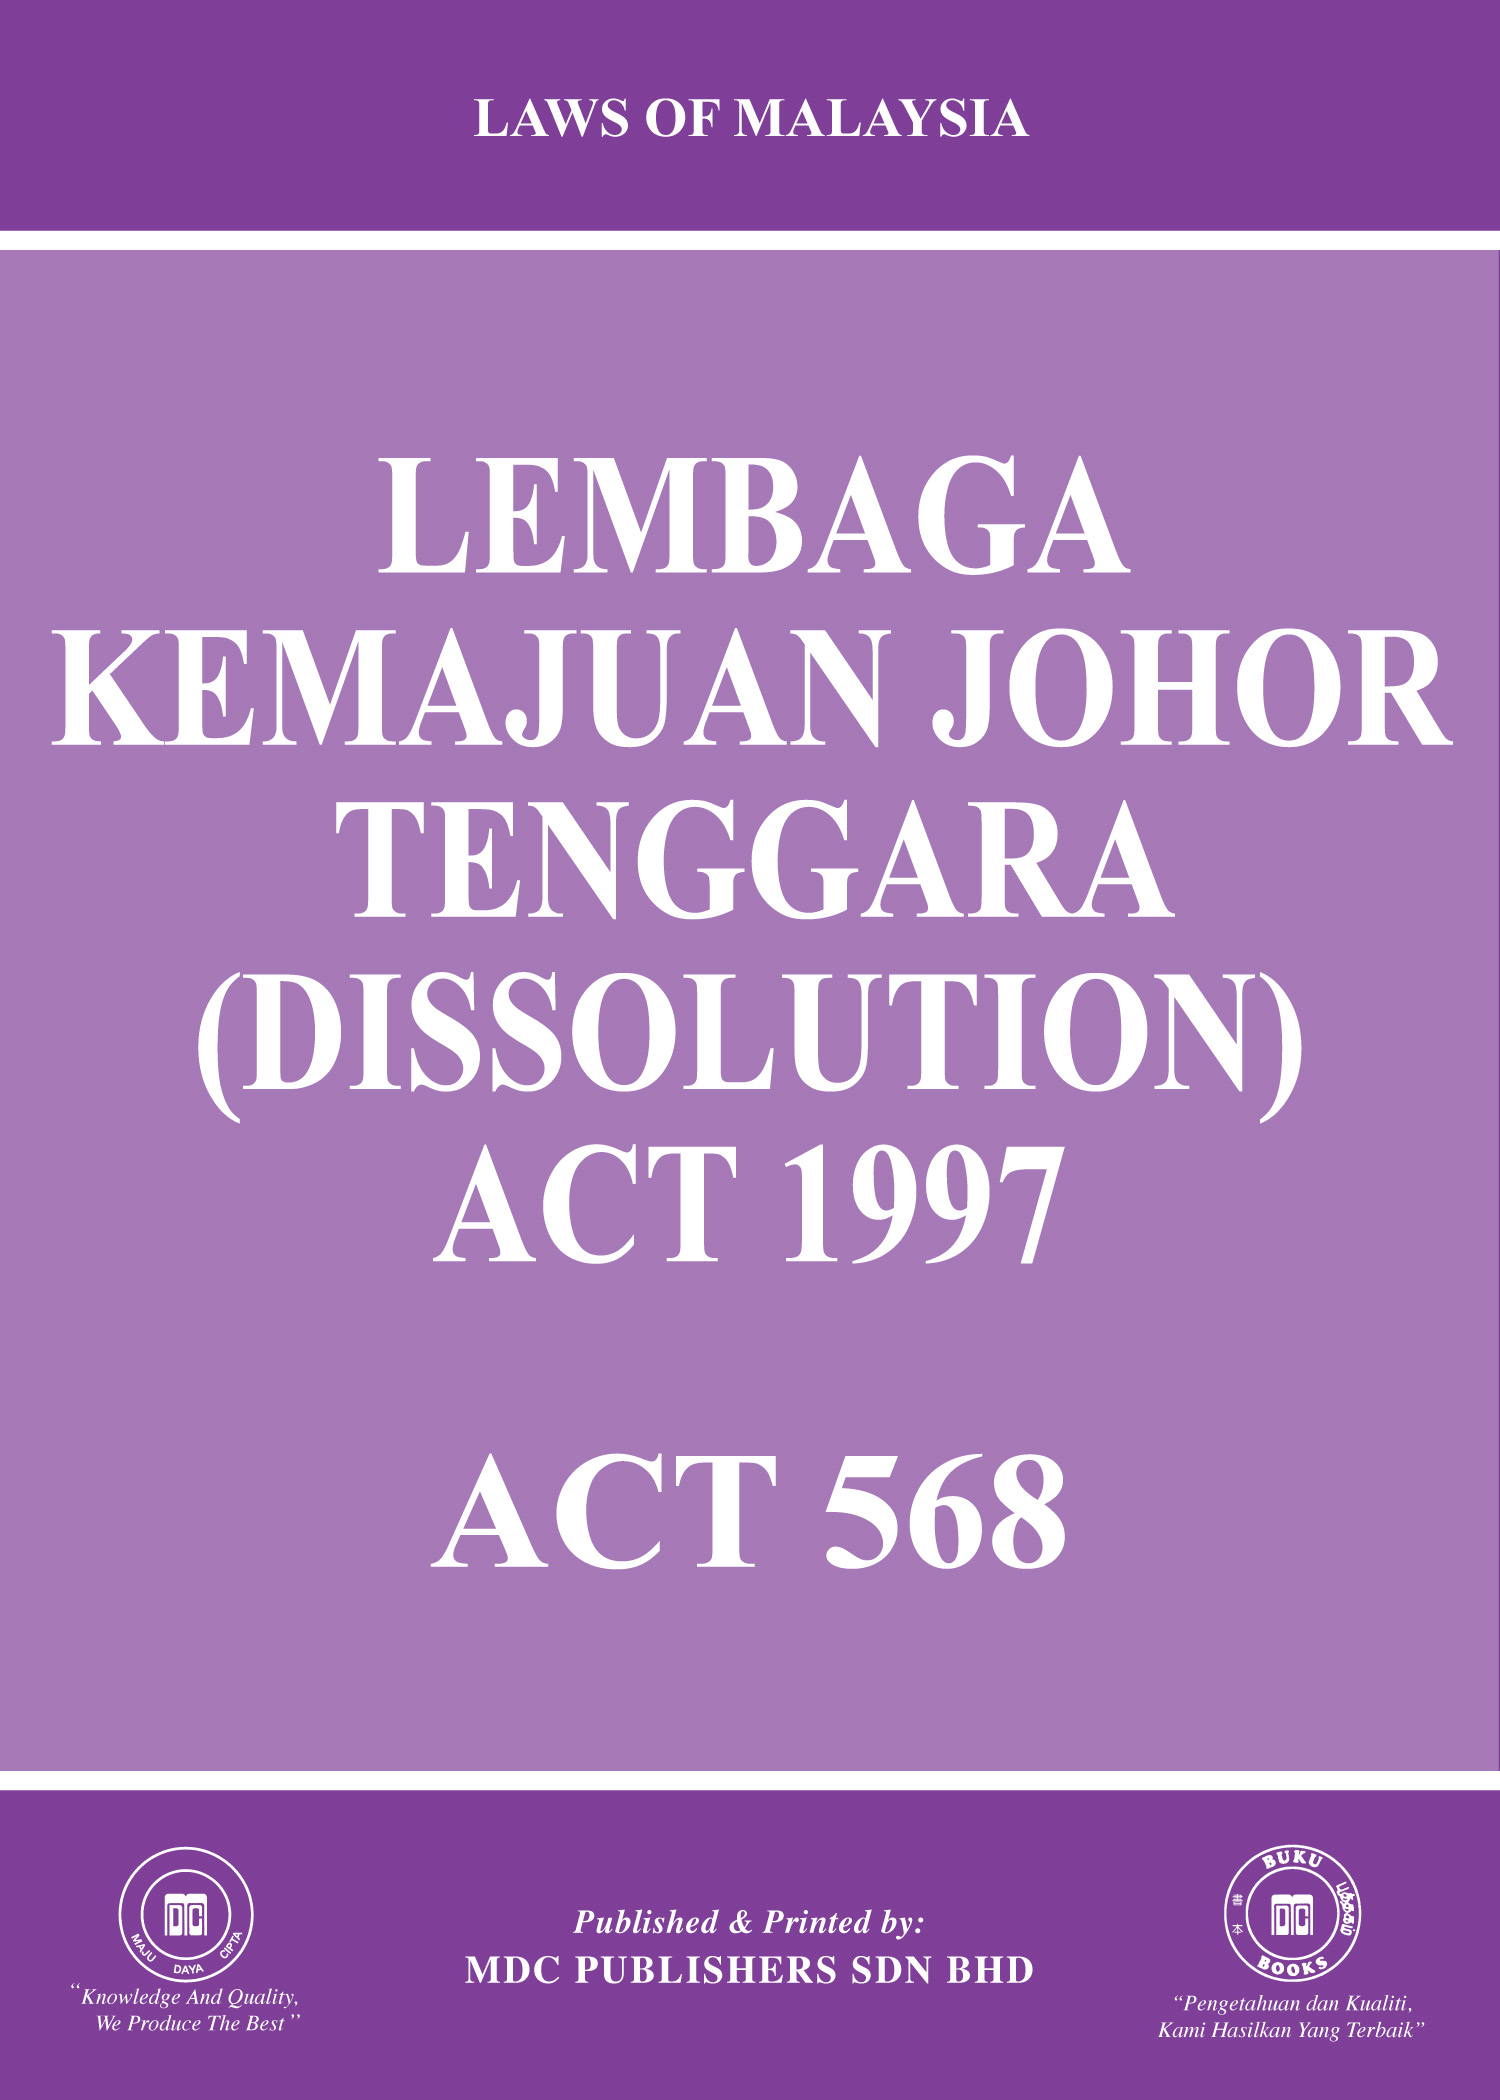 Laws of Malaysia :: Lembaga Kemajuan Johor Tenggara (Dissolution) Act 1997